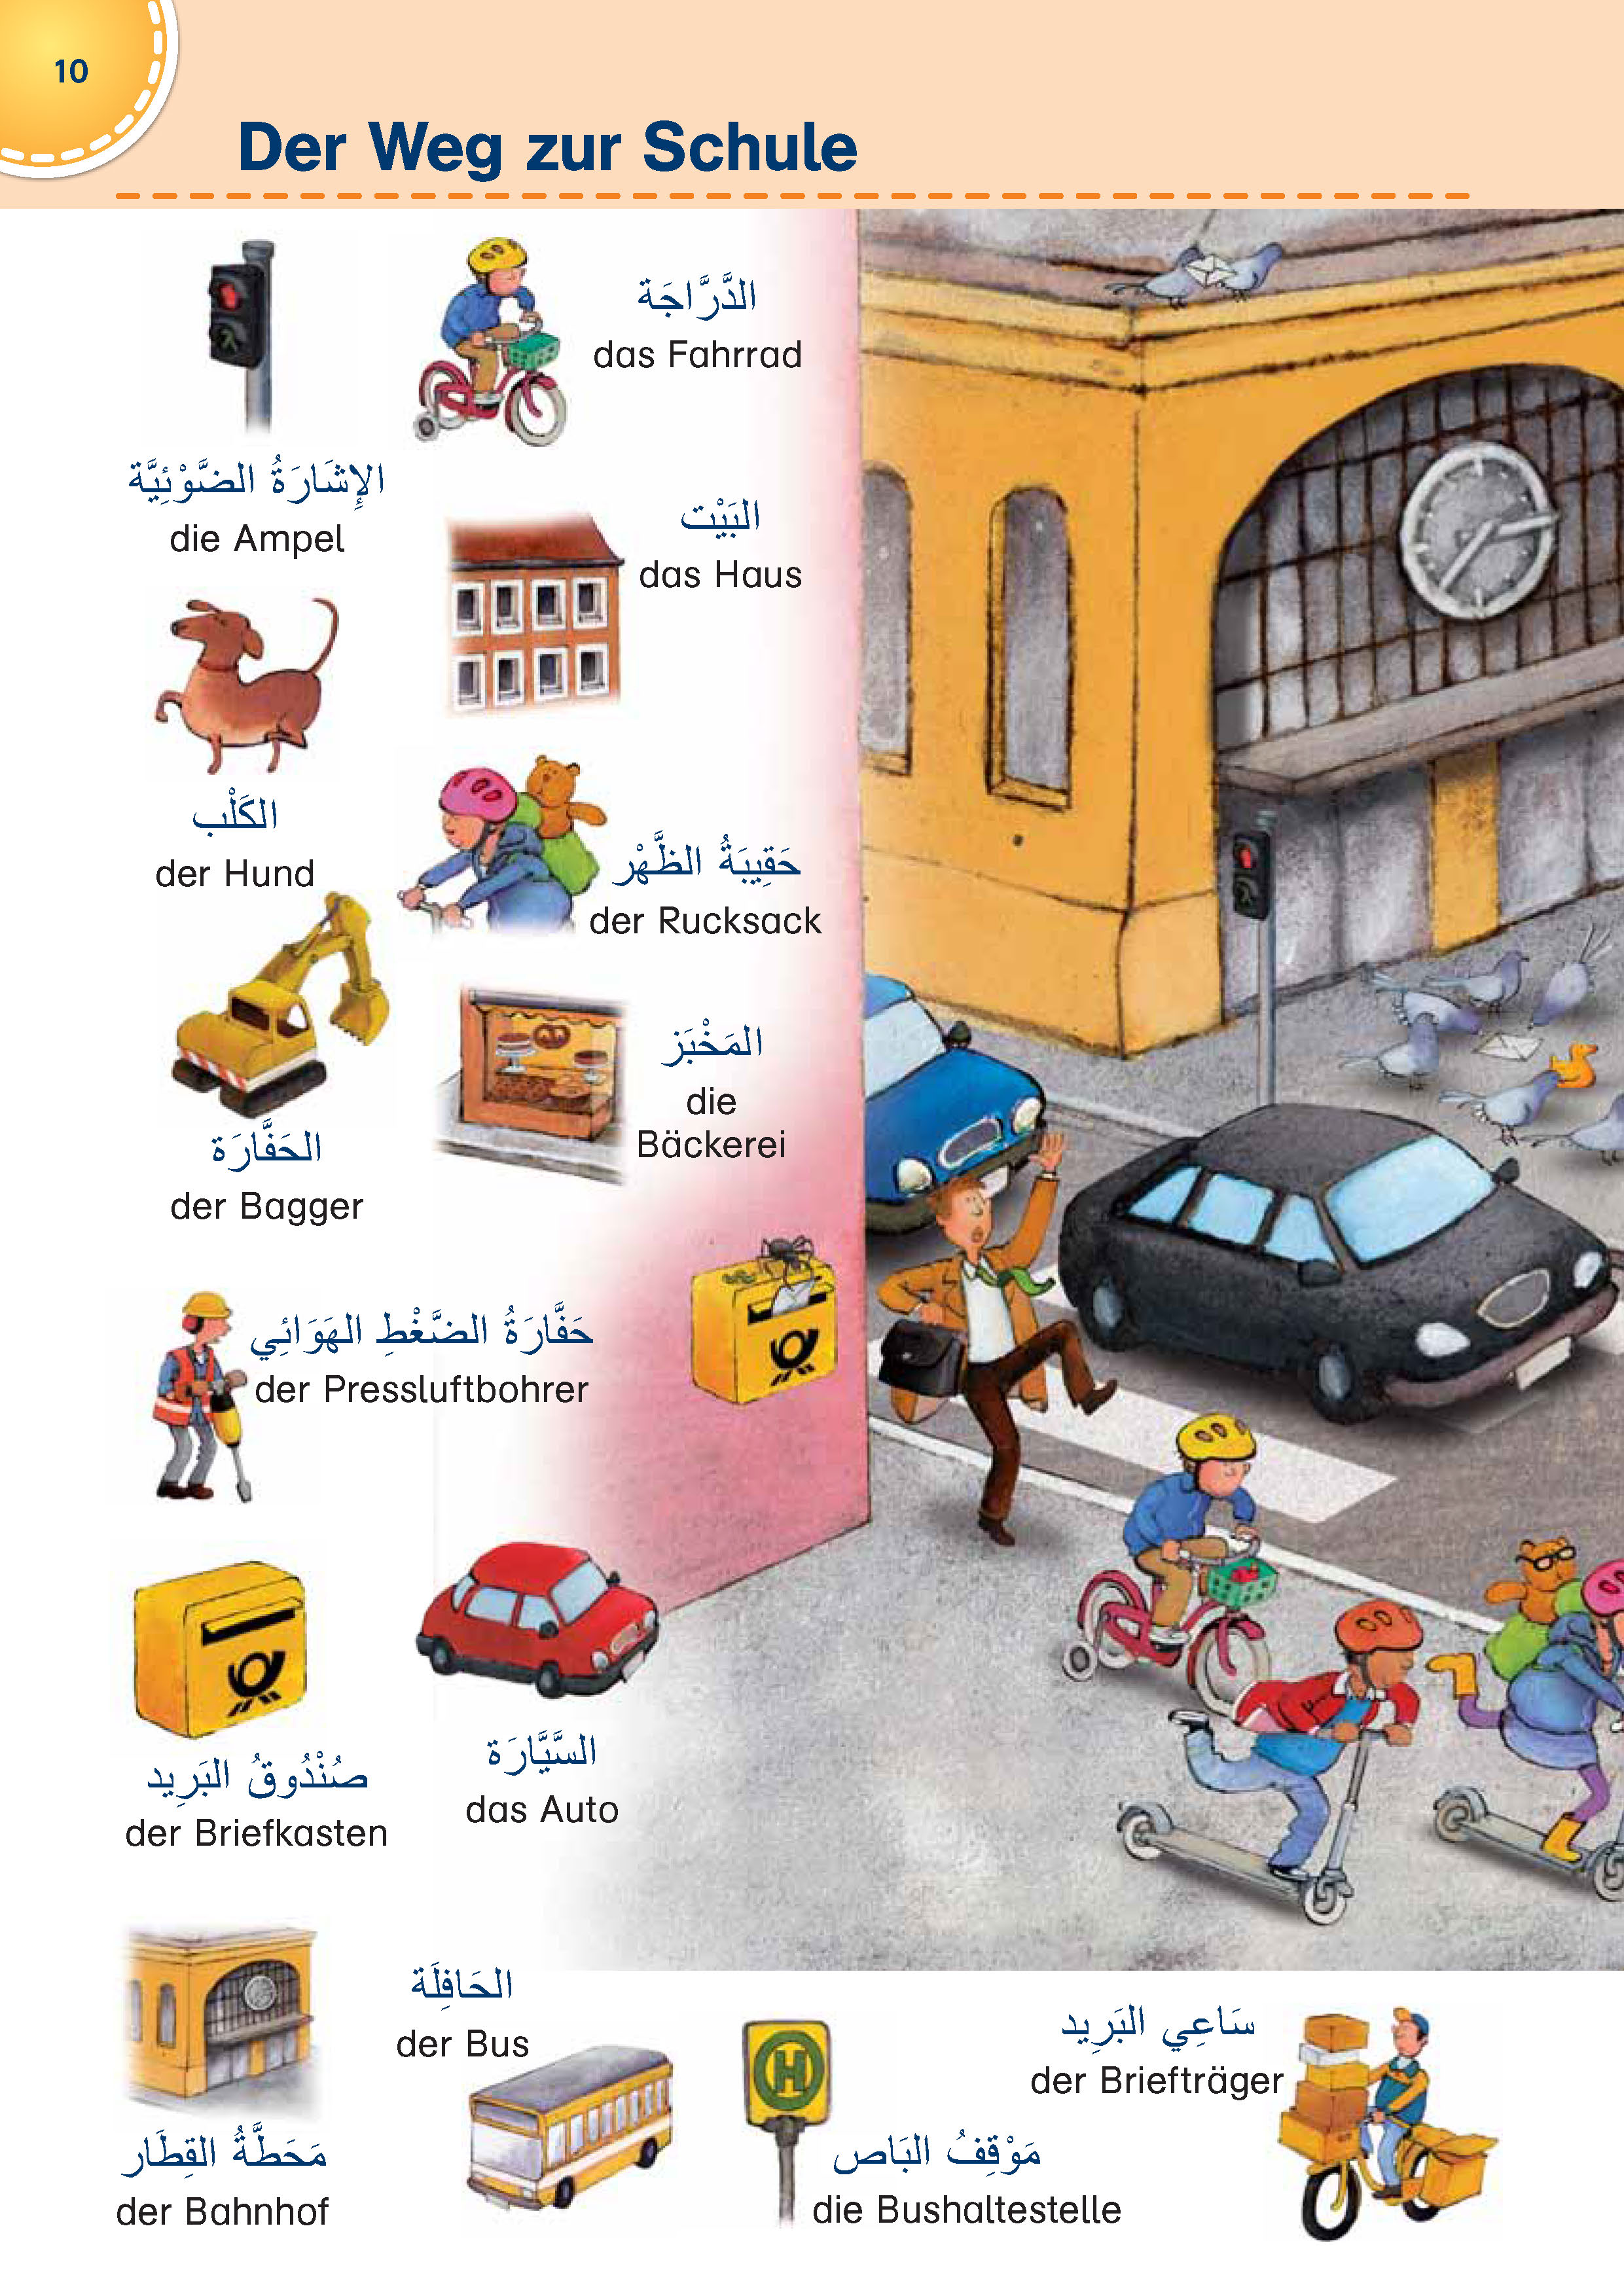 PONS Bildwörterbuch für Kinder Arabisch-Deutsch